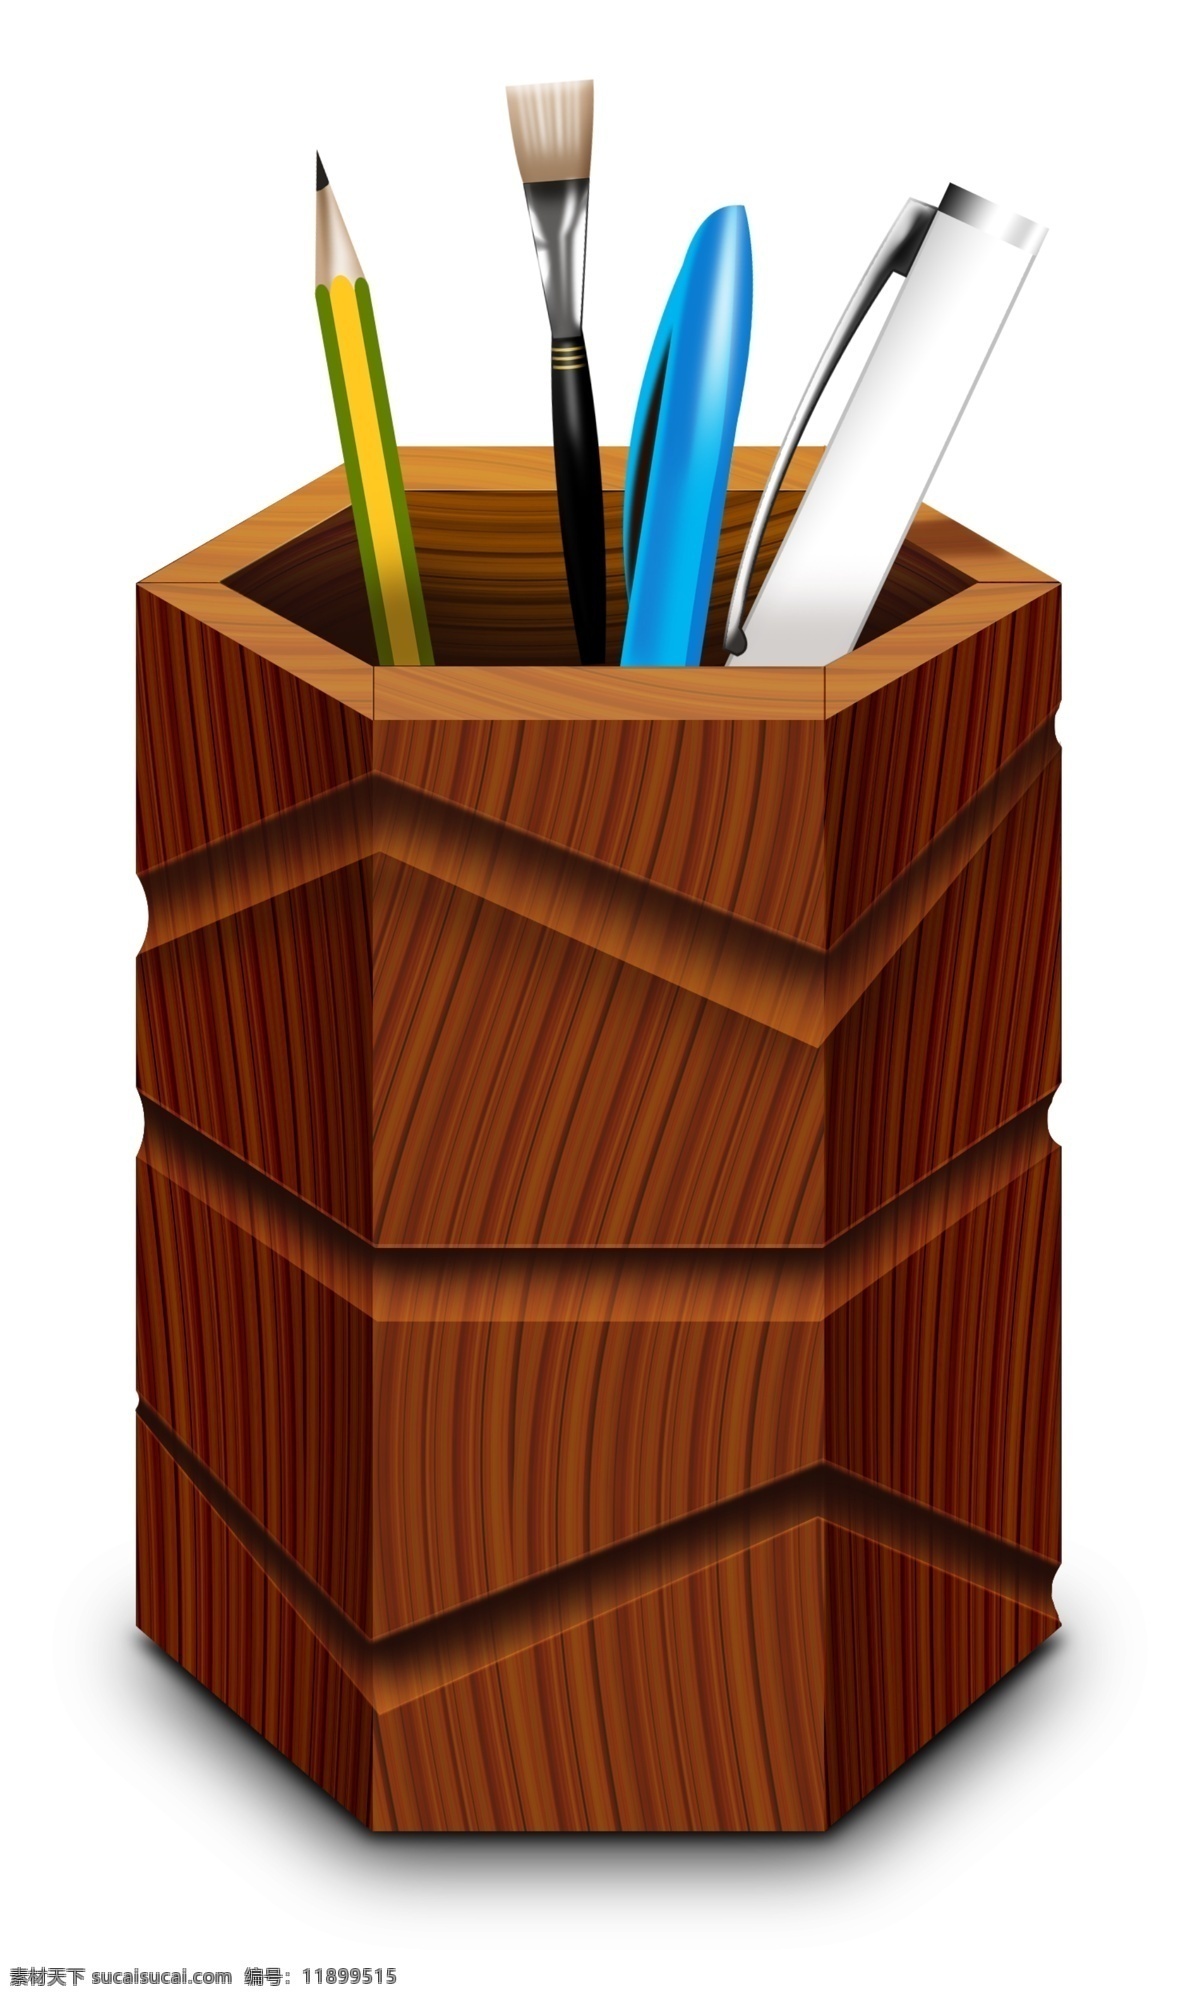 手绘笔筒 卡通笔筒 笔筒插画 学习工具 学习用品 木质笔筒 铅笔 圆珠笔 文具 生活百科